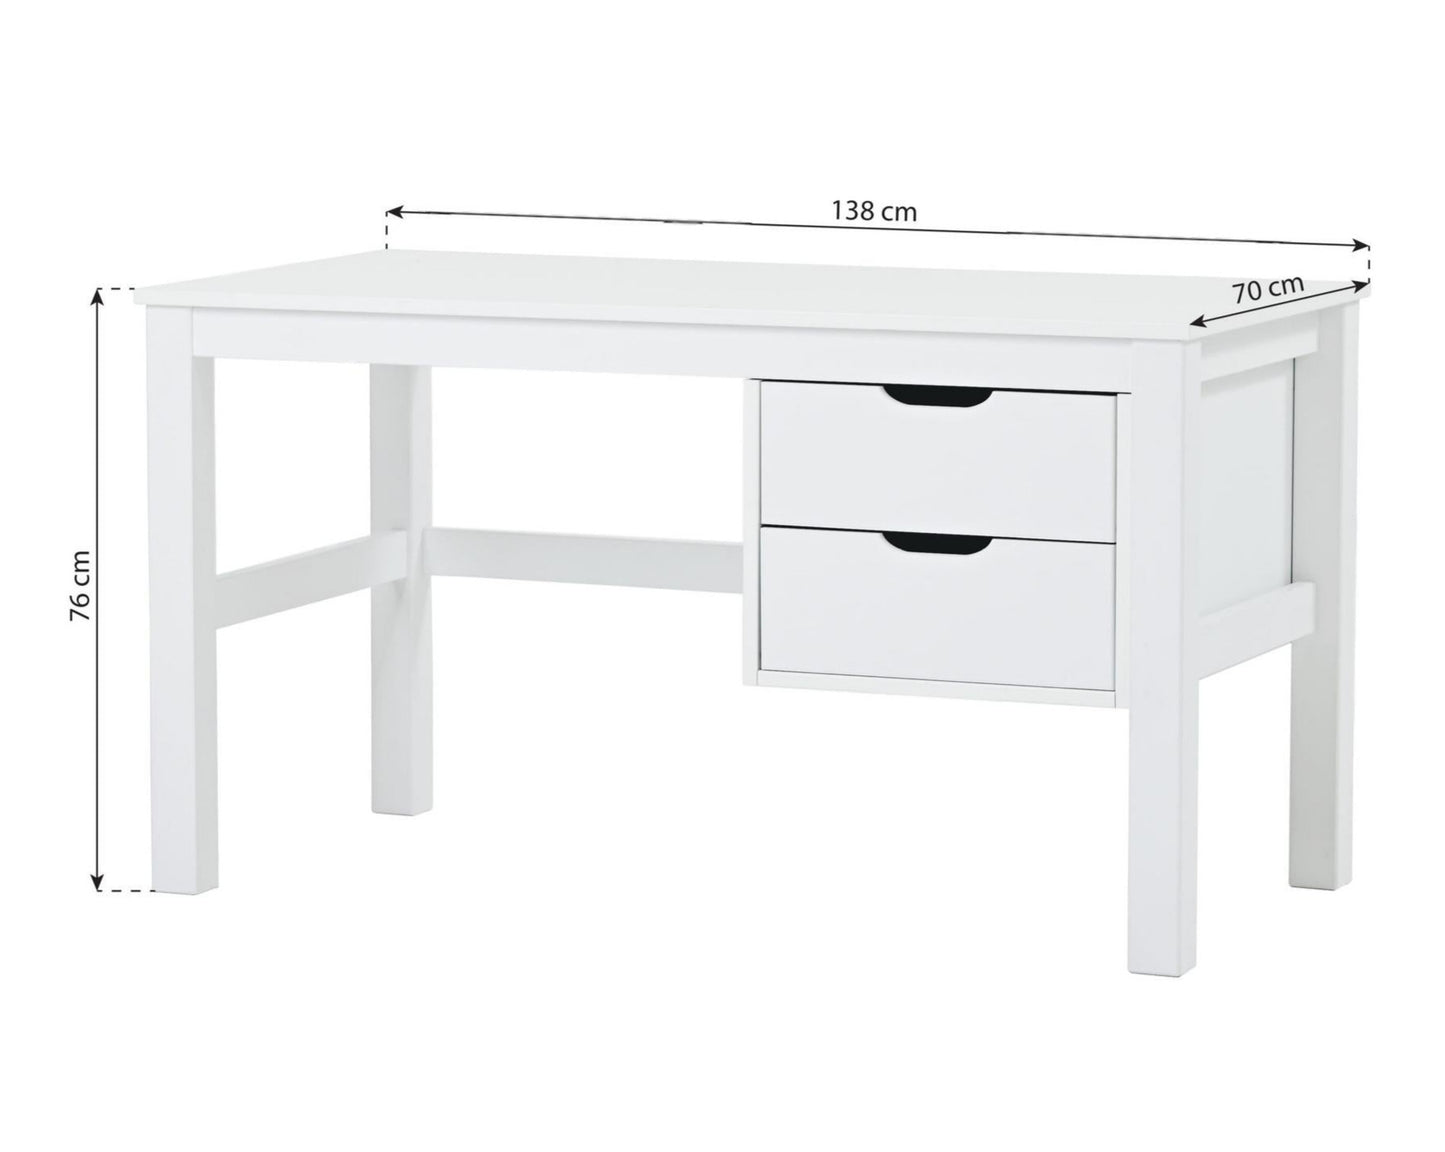 МАЙЯ - Письменный стол с 2 ящиками - белый